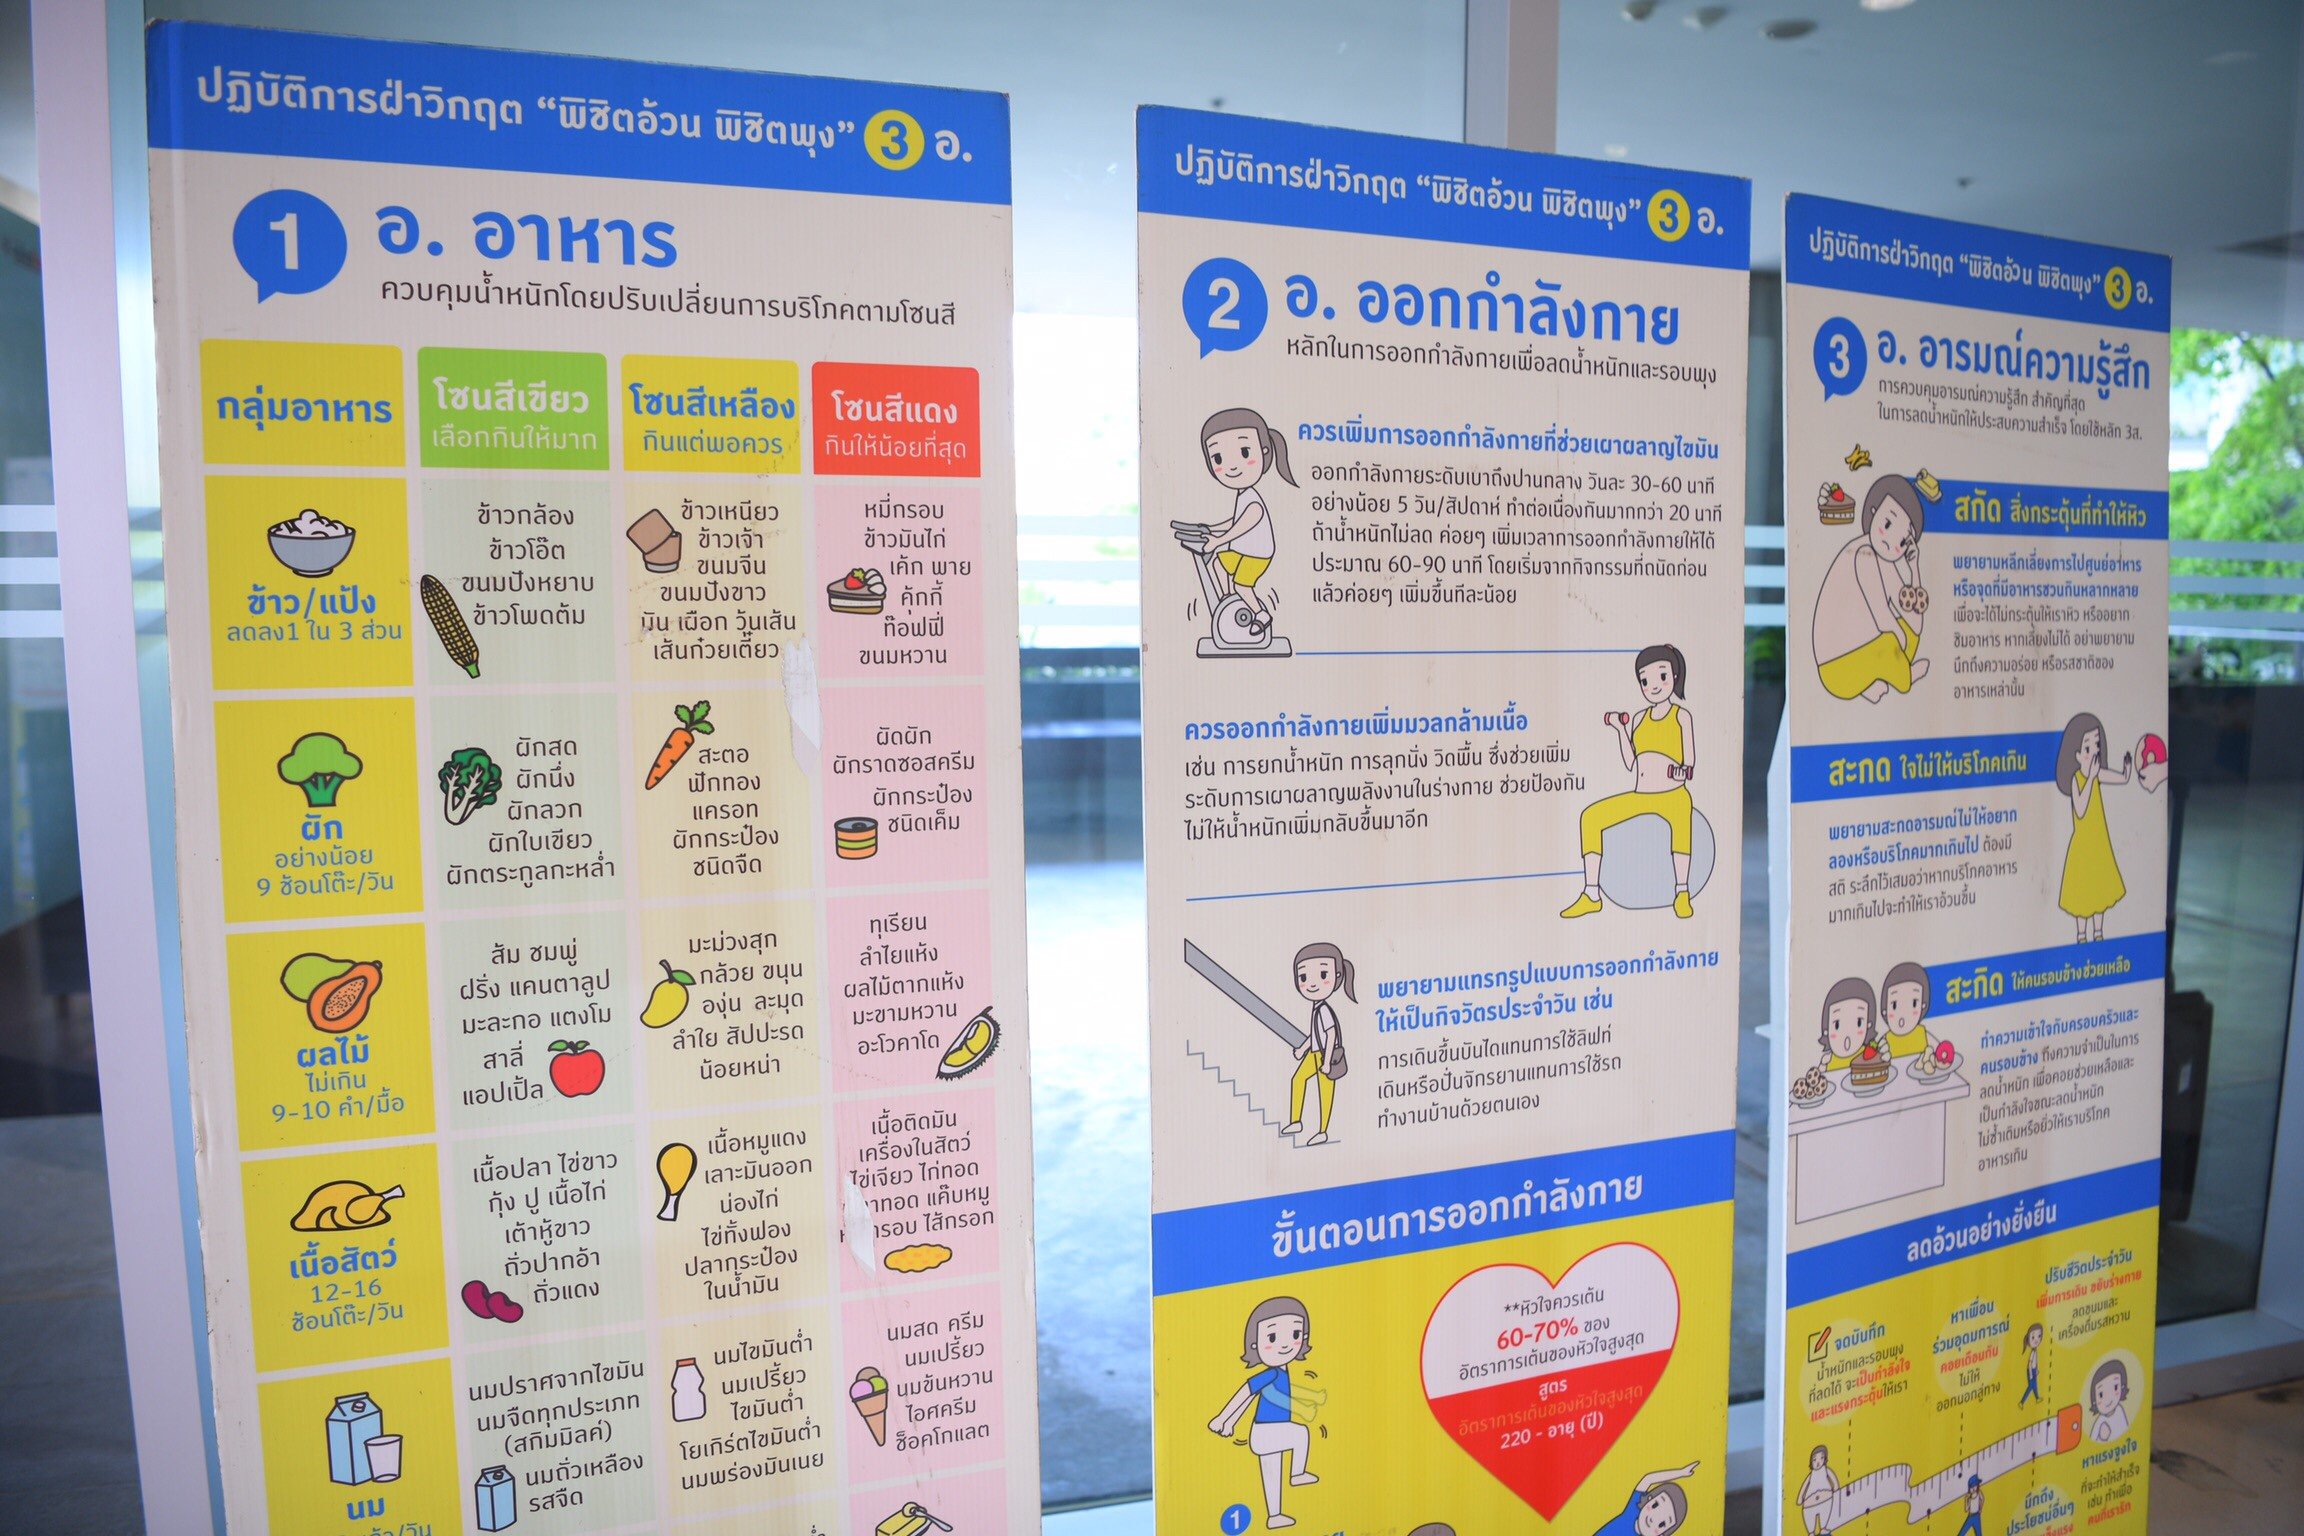 สสส.ปลุกคนไทยลดพุงลดโรคผ่าน “ภารกิจ ท้า คุณ เปลี่ยน” thaihealth